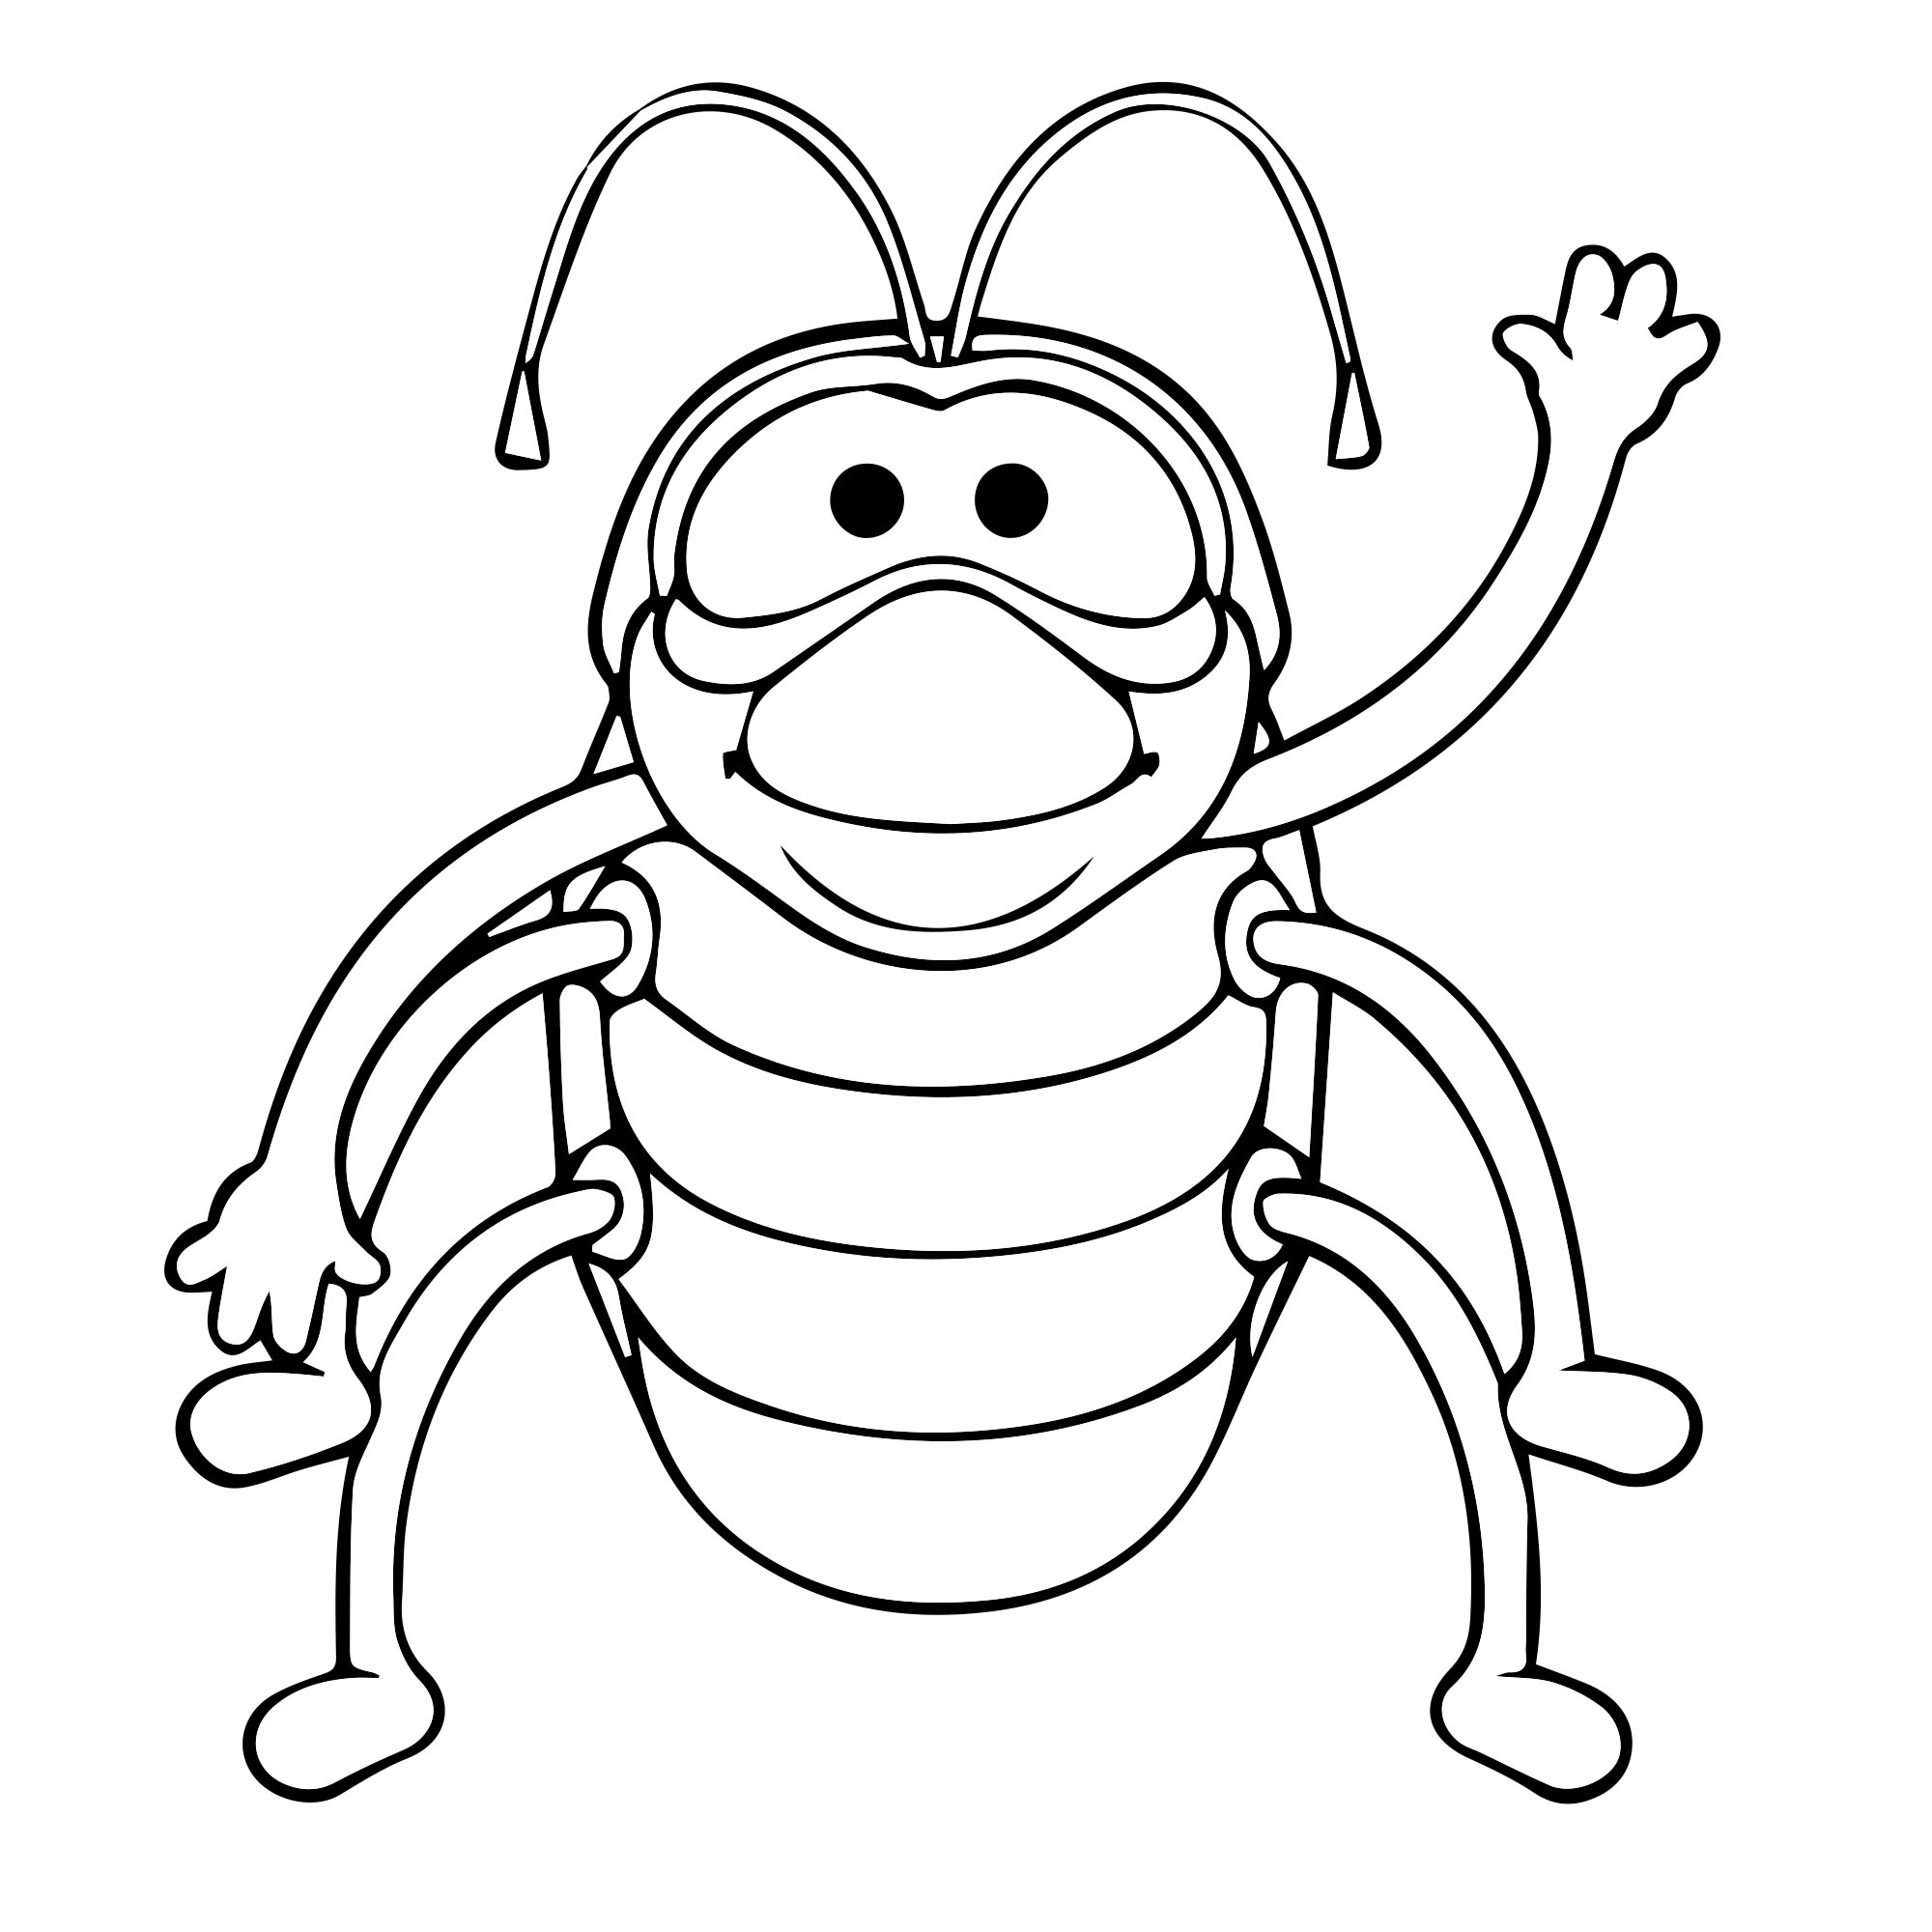 Приветливый жук — раскраска для детей. Распечатать бесплатно.